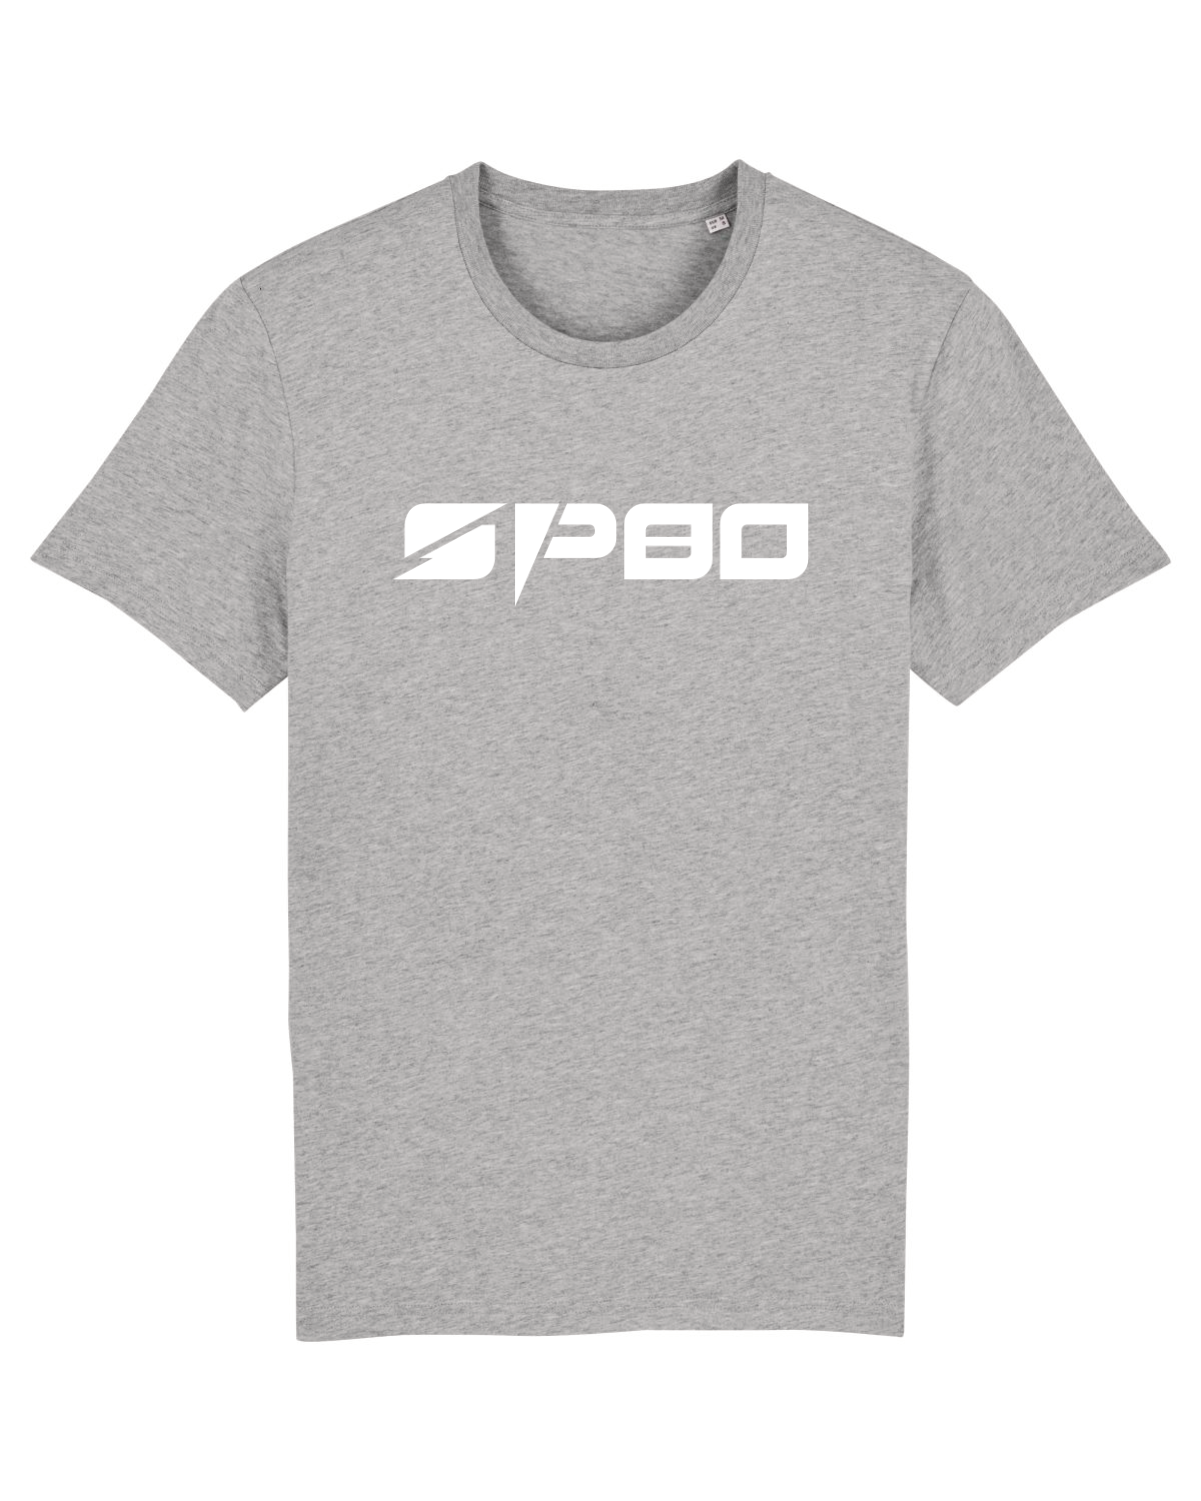 T-shirt SP80 - Unisexe